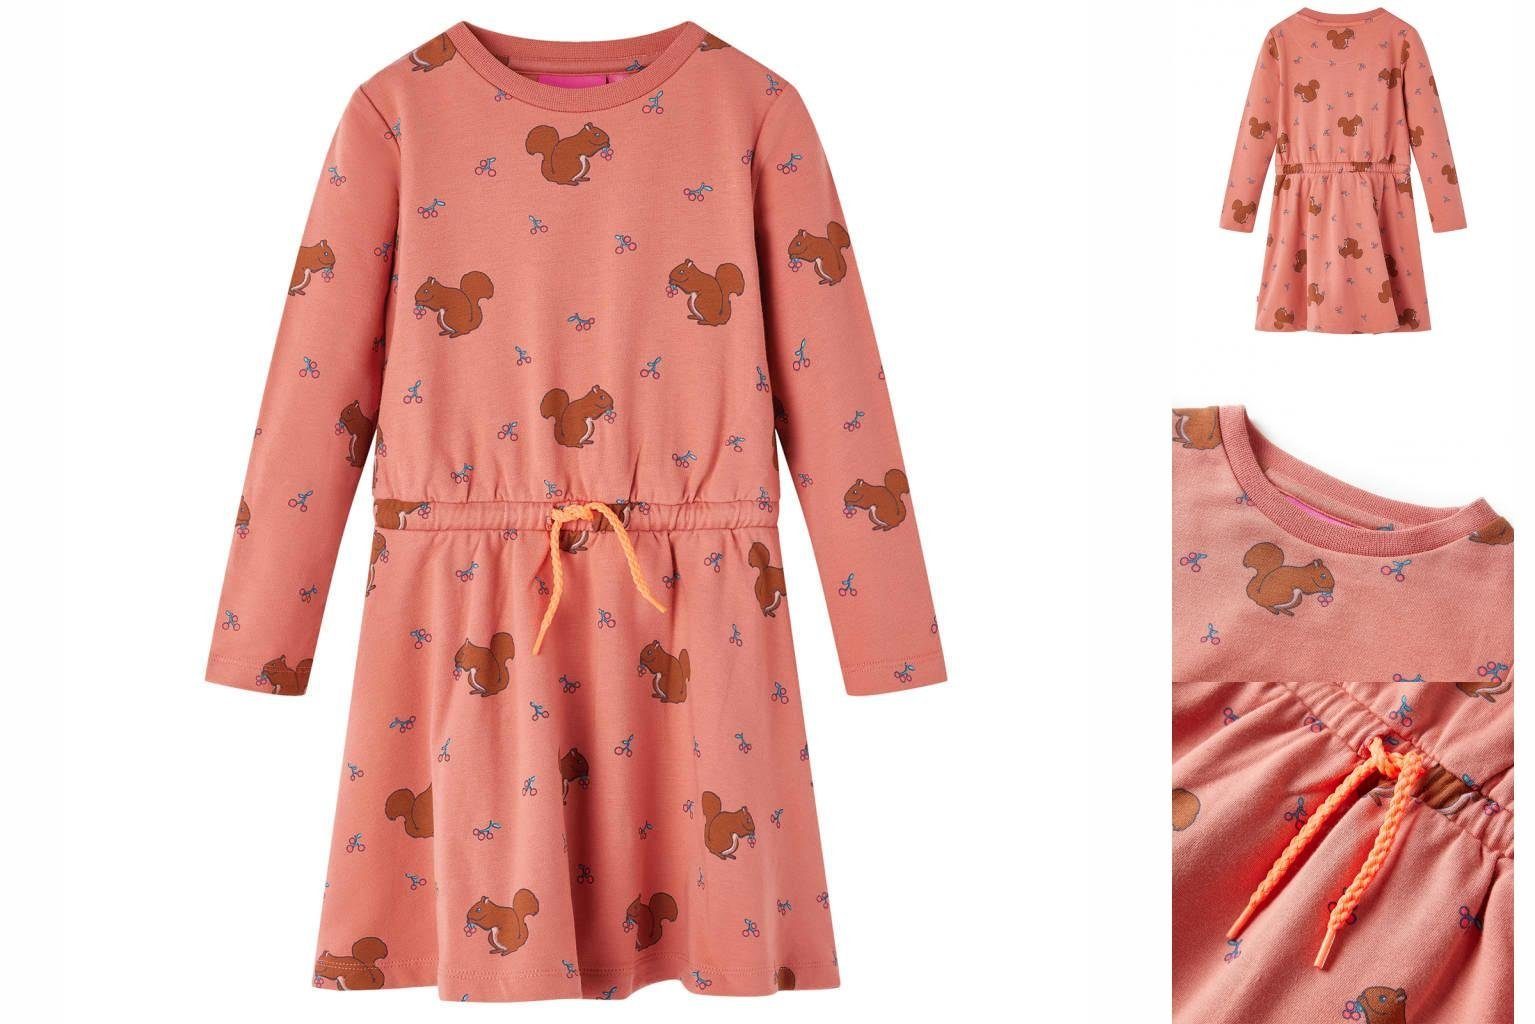 vidaXL A-Linien-Kleid Kinderkleid Eichhörnchen-Muster Altrosa 92